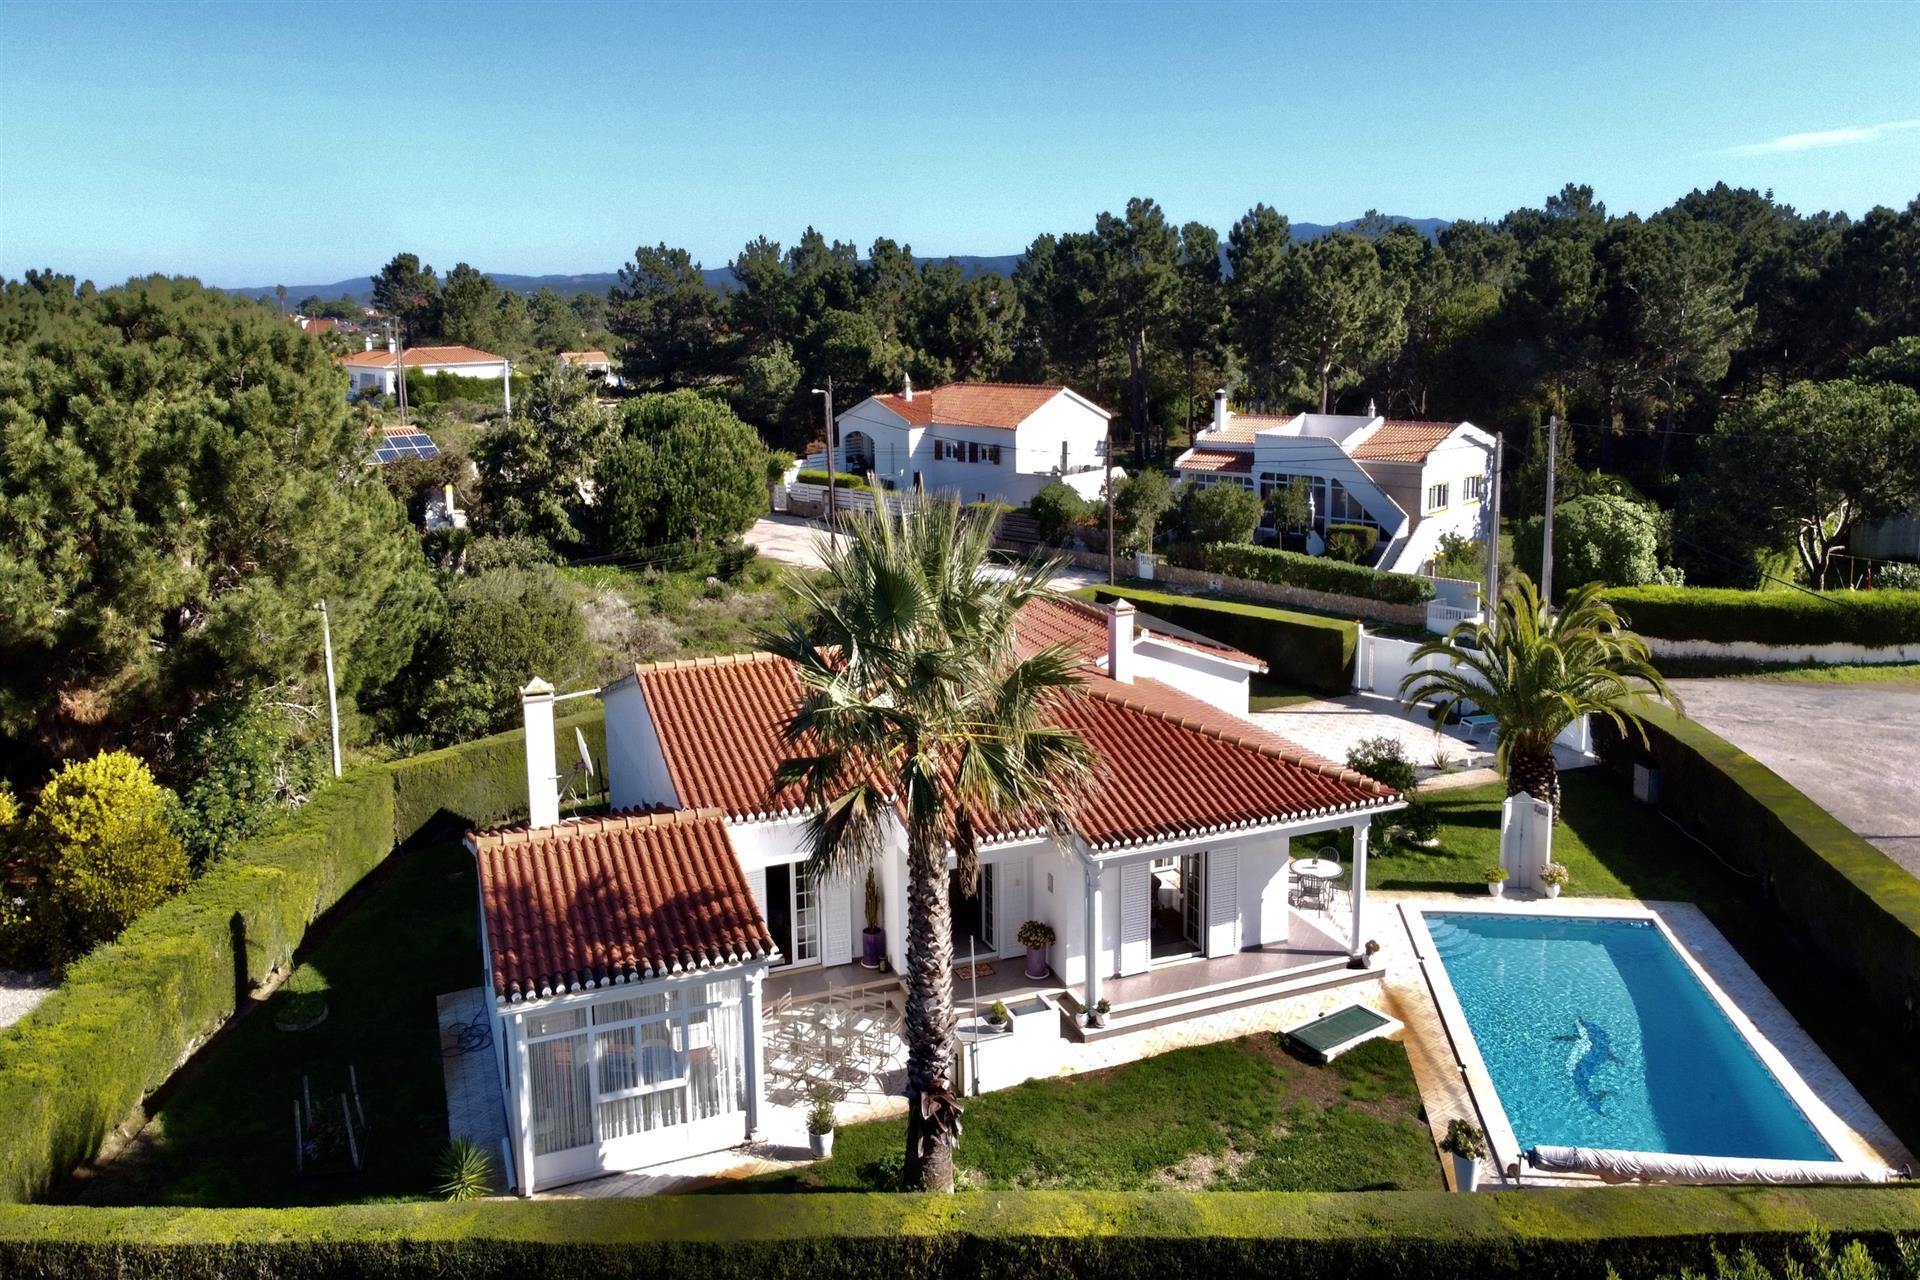 Attractive 3 bed villa with pool in Vale da Telha